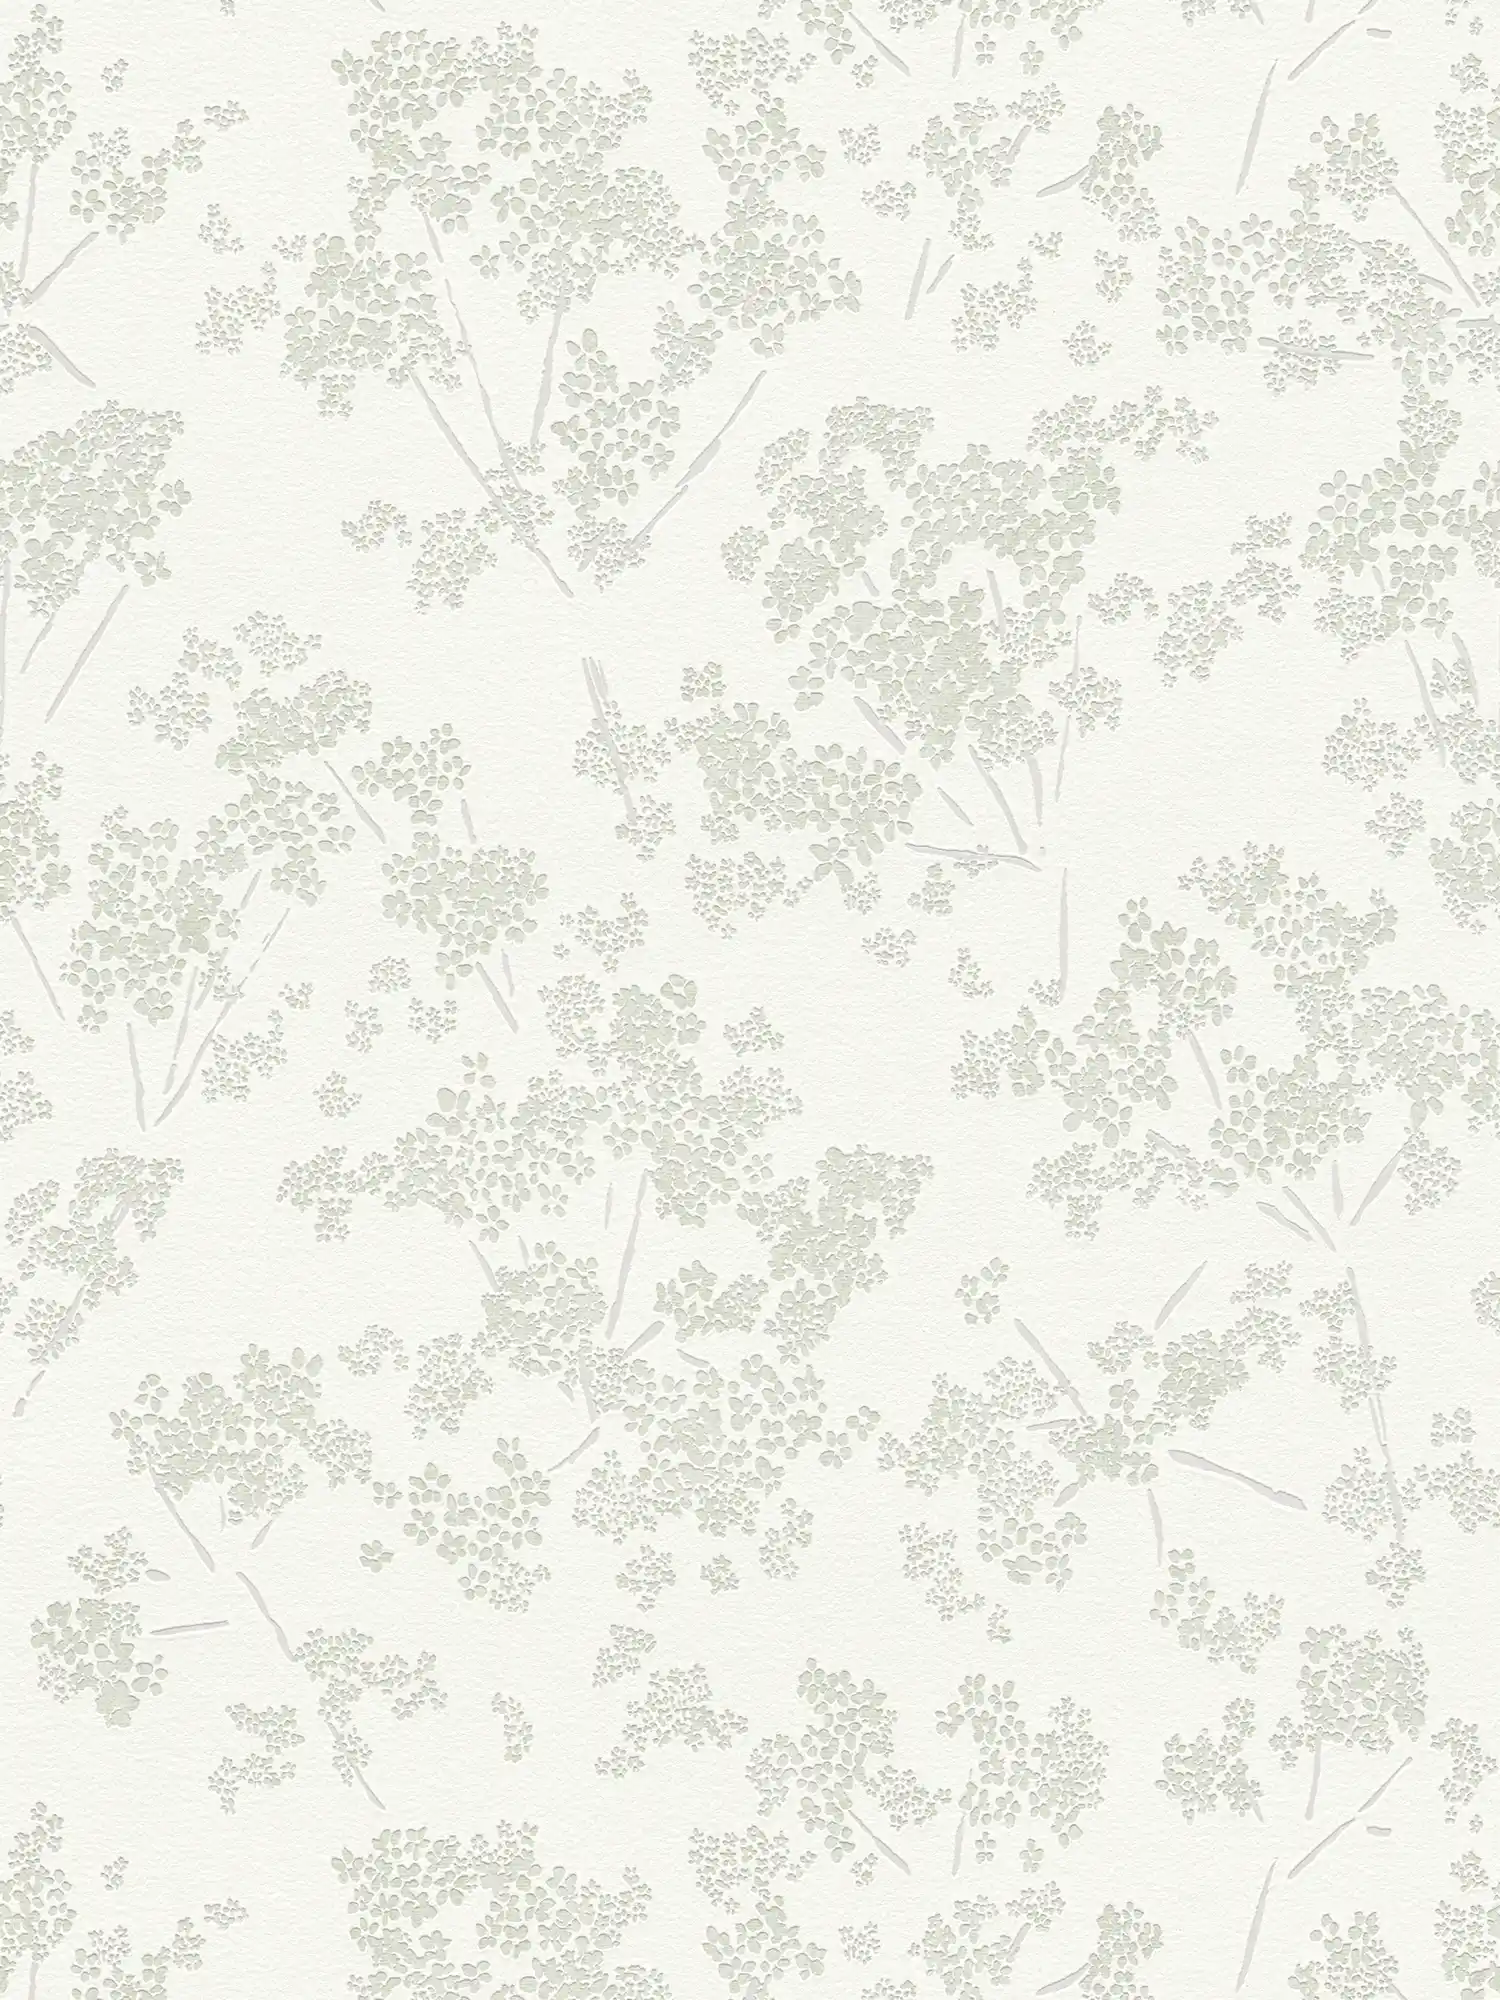 Vliesbehang met bloemenmotief - wit, groen, grijs
